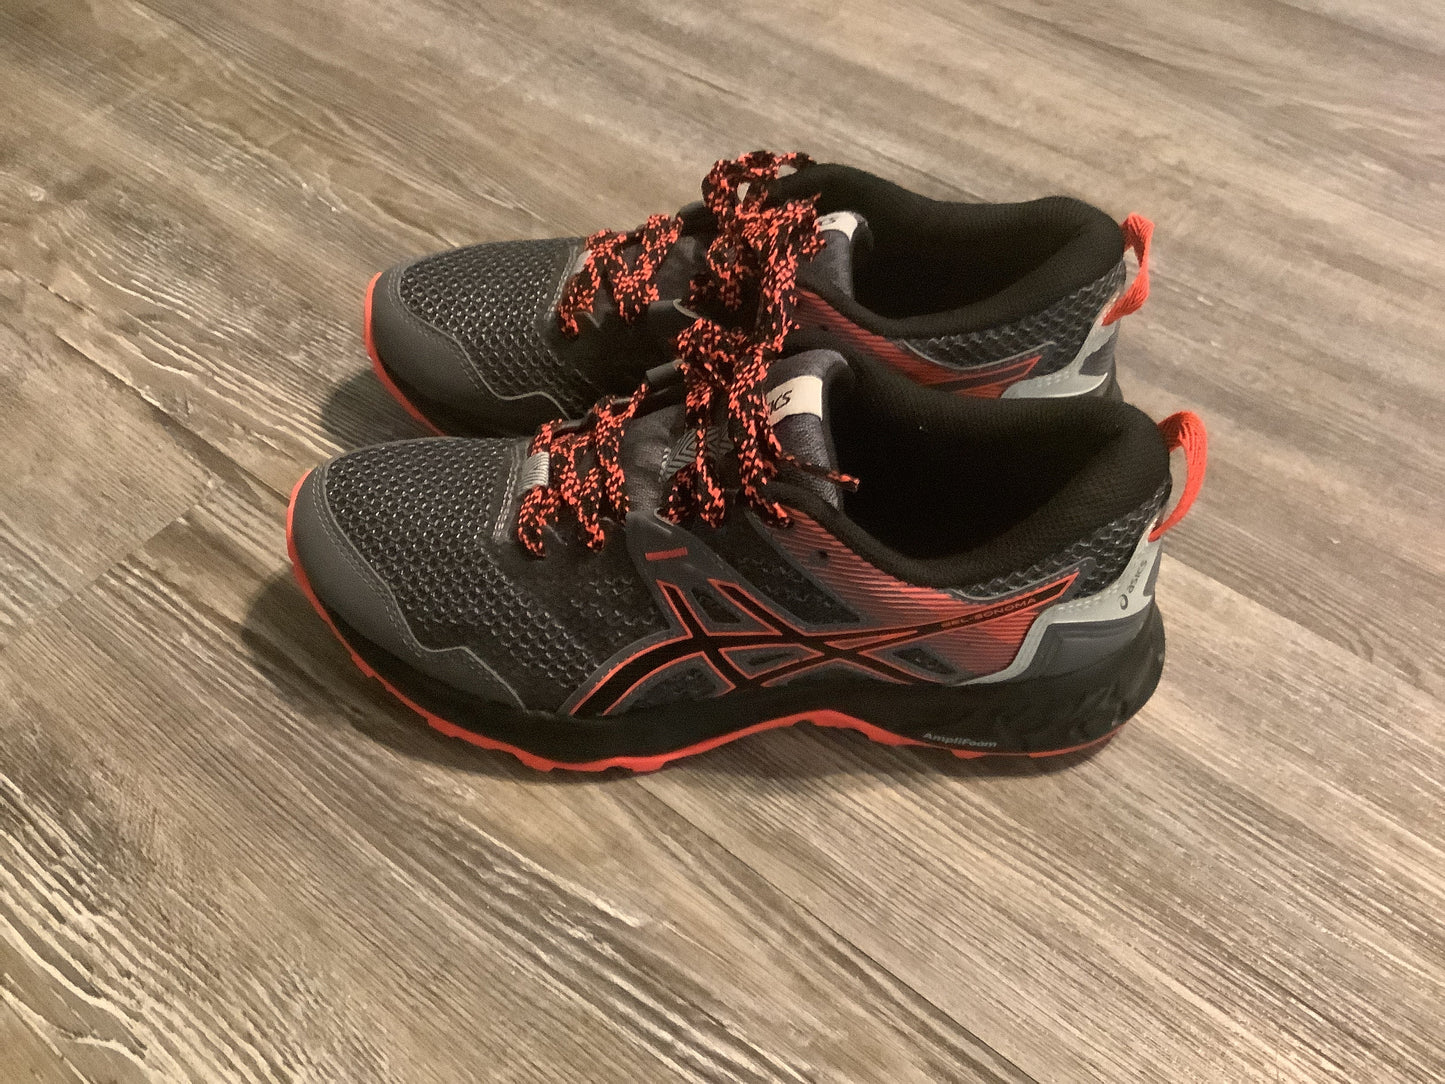 Black & Orange Shoes Athletic Asics, Size 6.5